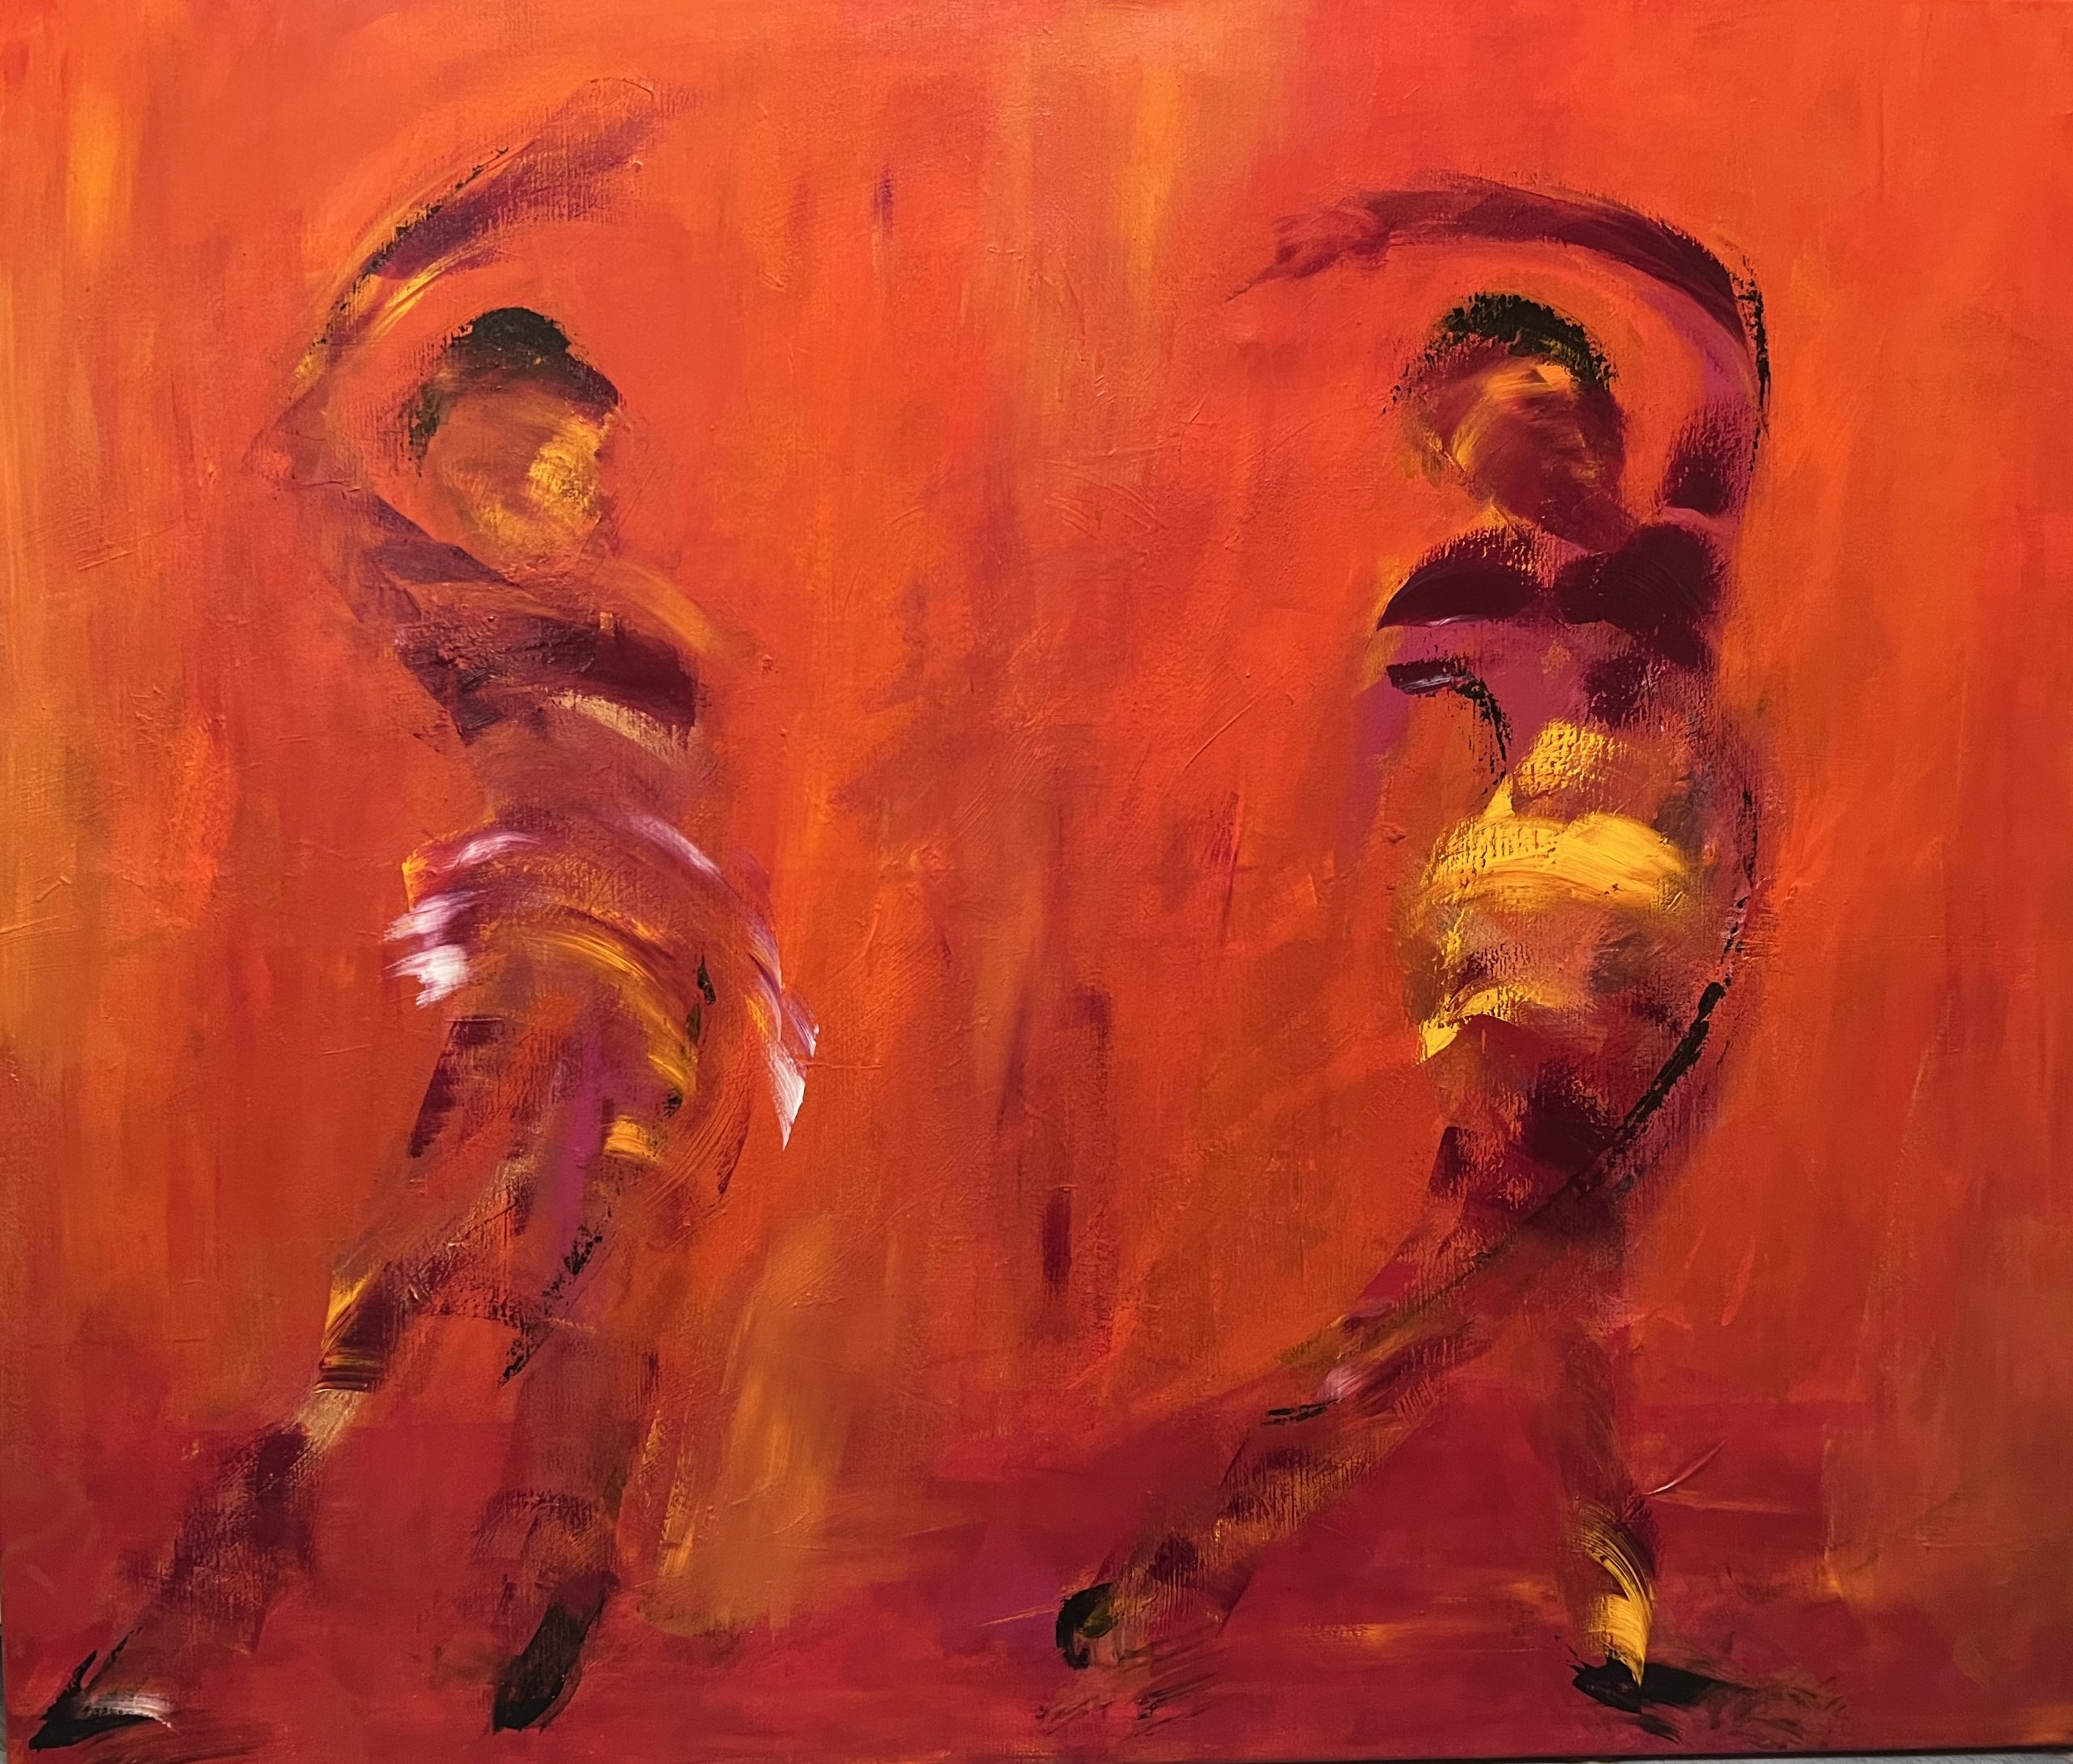 Dejligt varmt maleri med tre kvinder i bevægelse - på vej op eller ned?